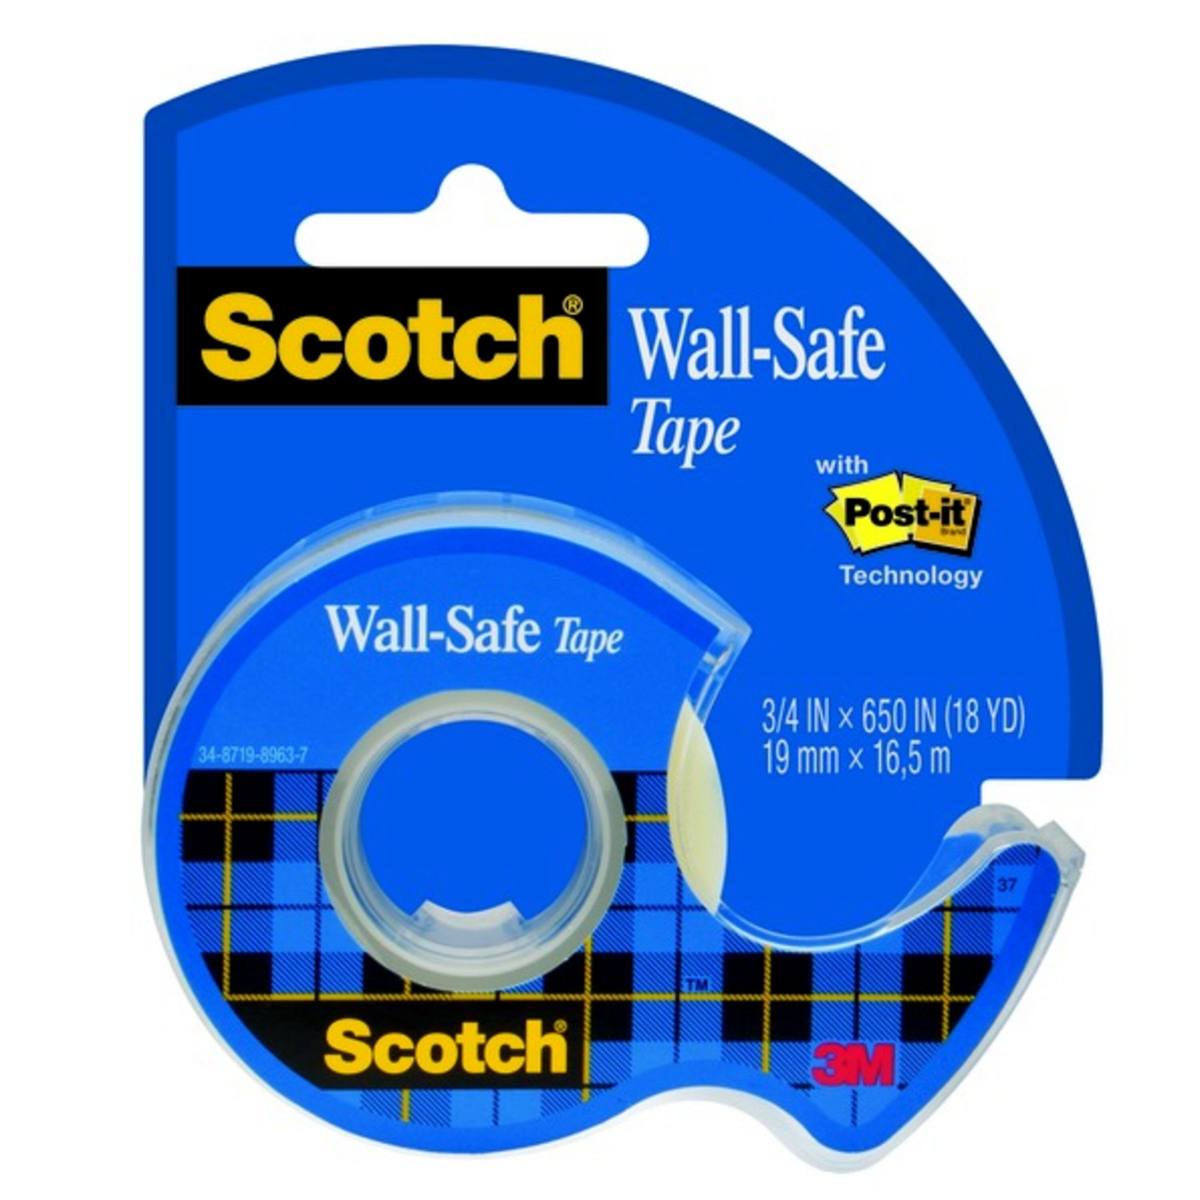 3M Scotch Wall-Safe nastro adesivo 19 mm x 16,5 m 1 rotolo, 1 dispenser maxi